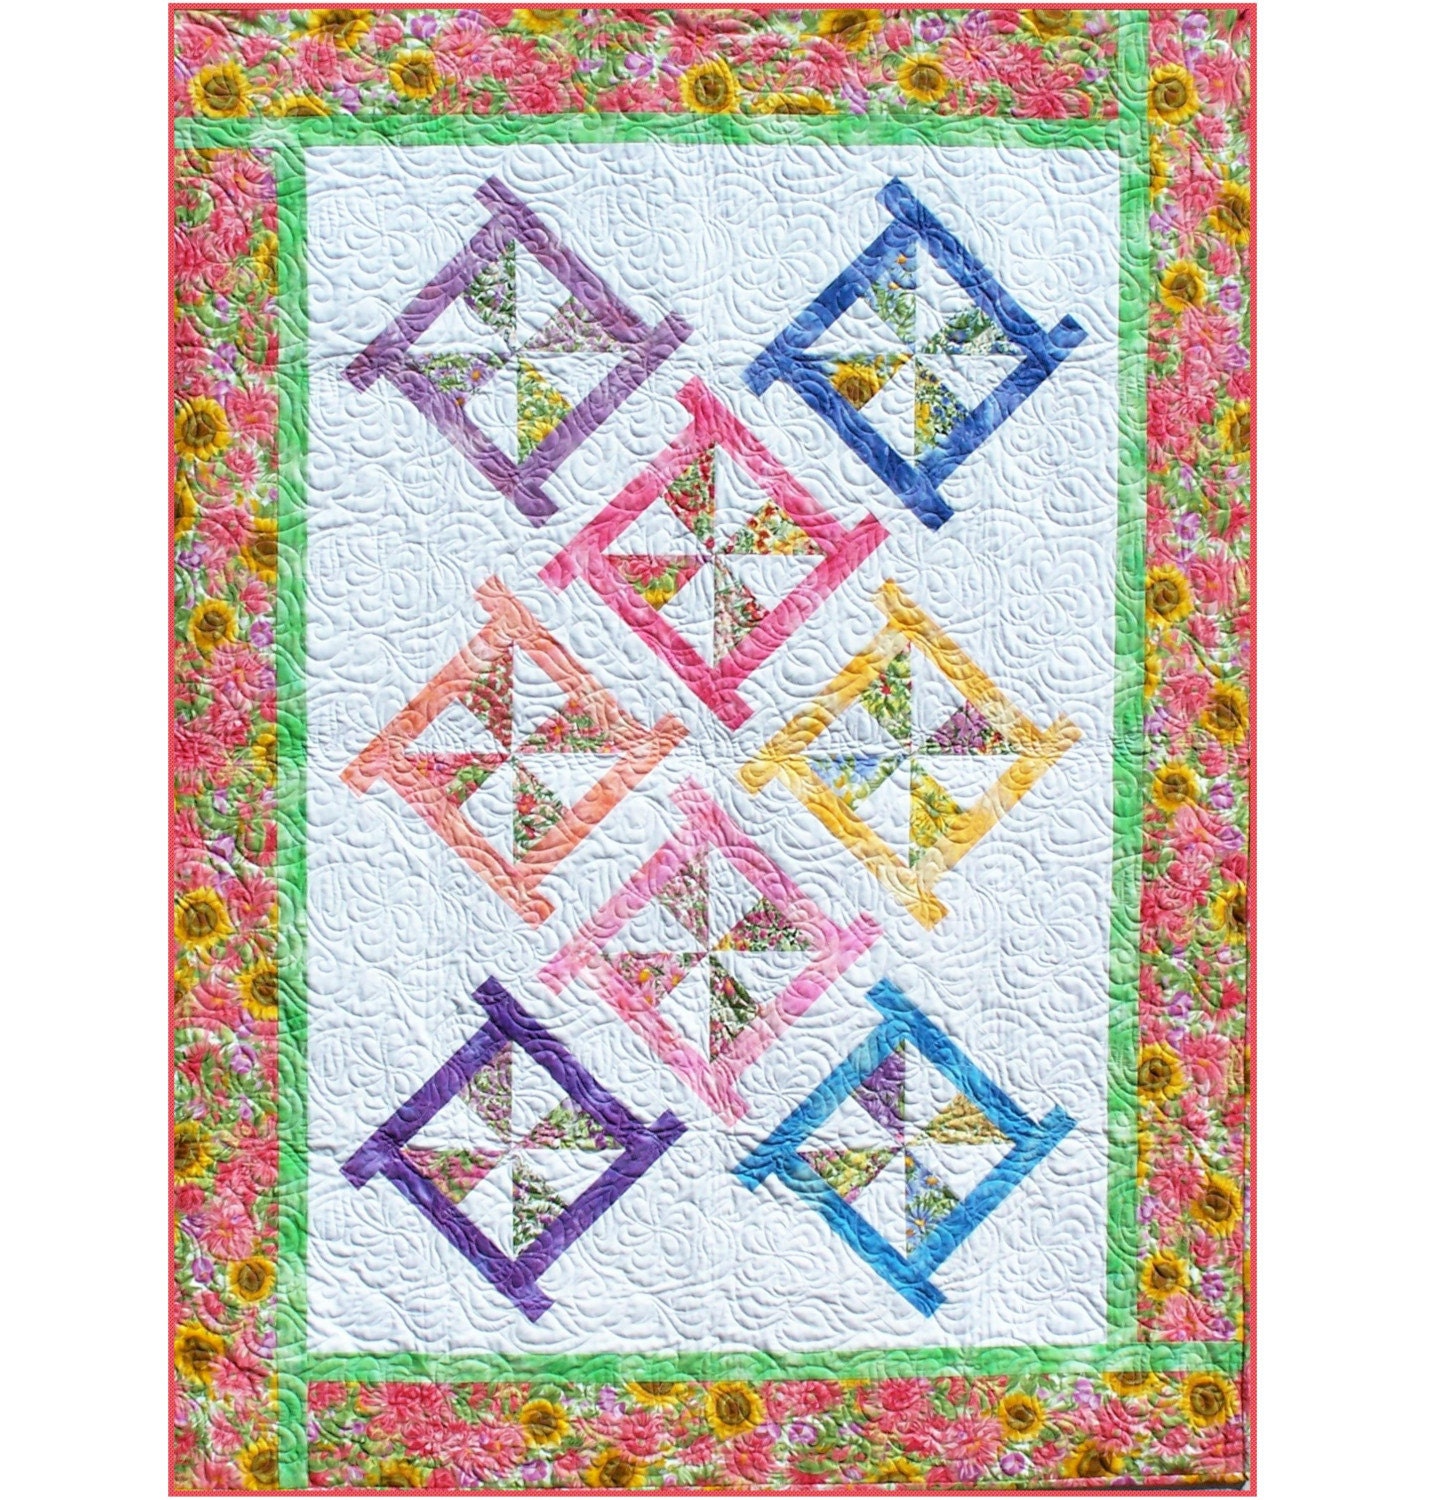 Pinwheel Quilt Pattern Free | Patterns Gallery